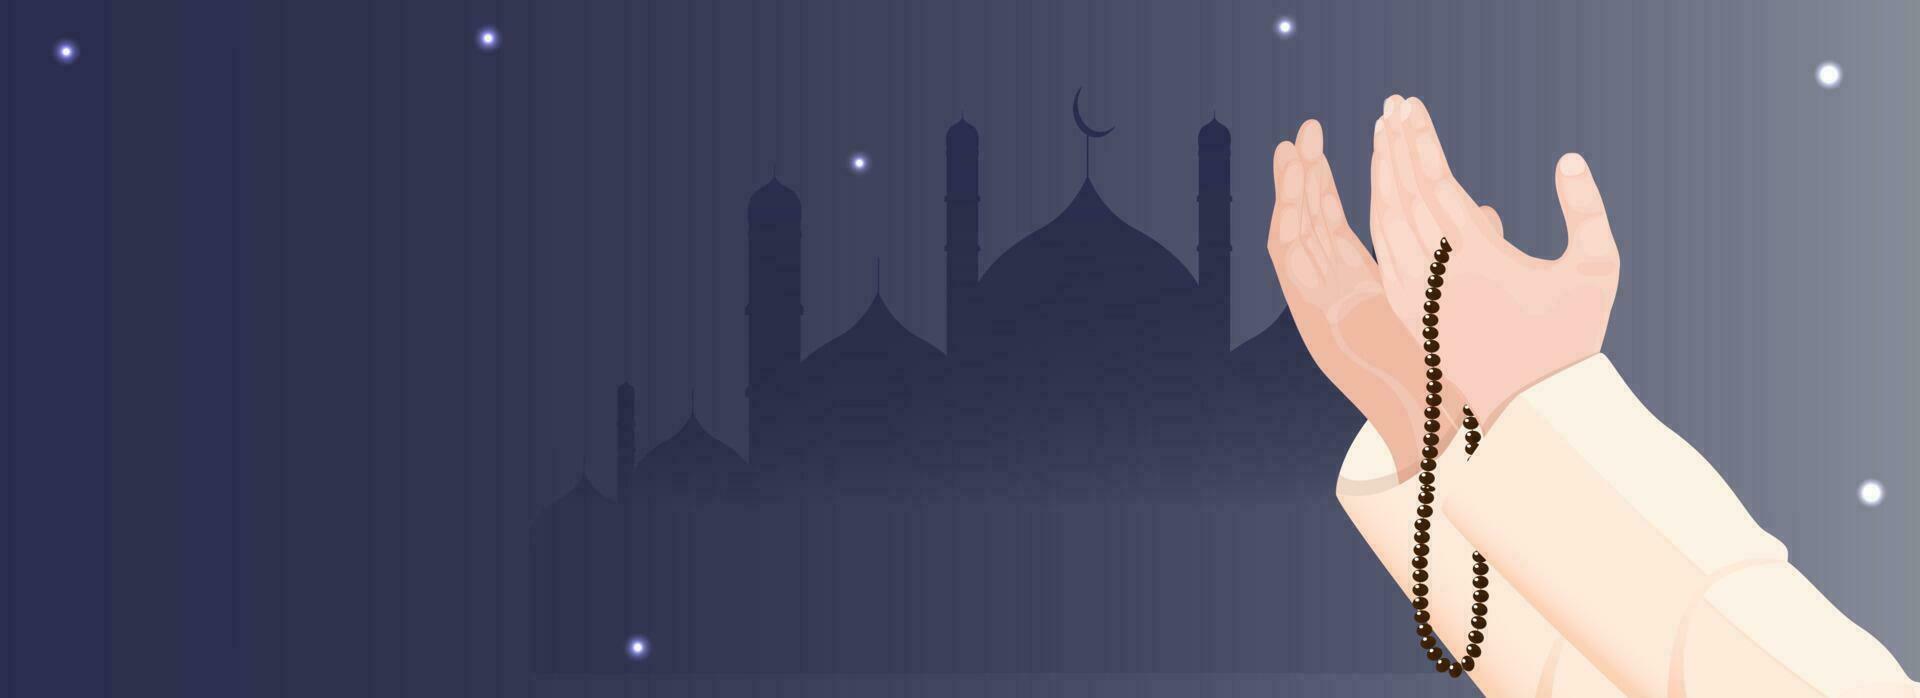 Illustration von Muslim beten Hände mit tasbih auf Blau Silhouette Moschee Hintergrund. vektor